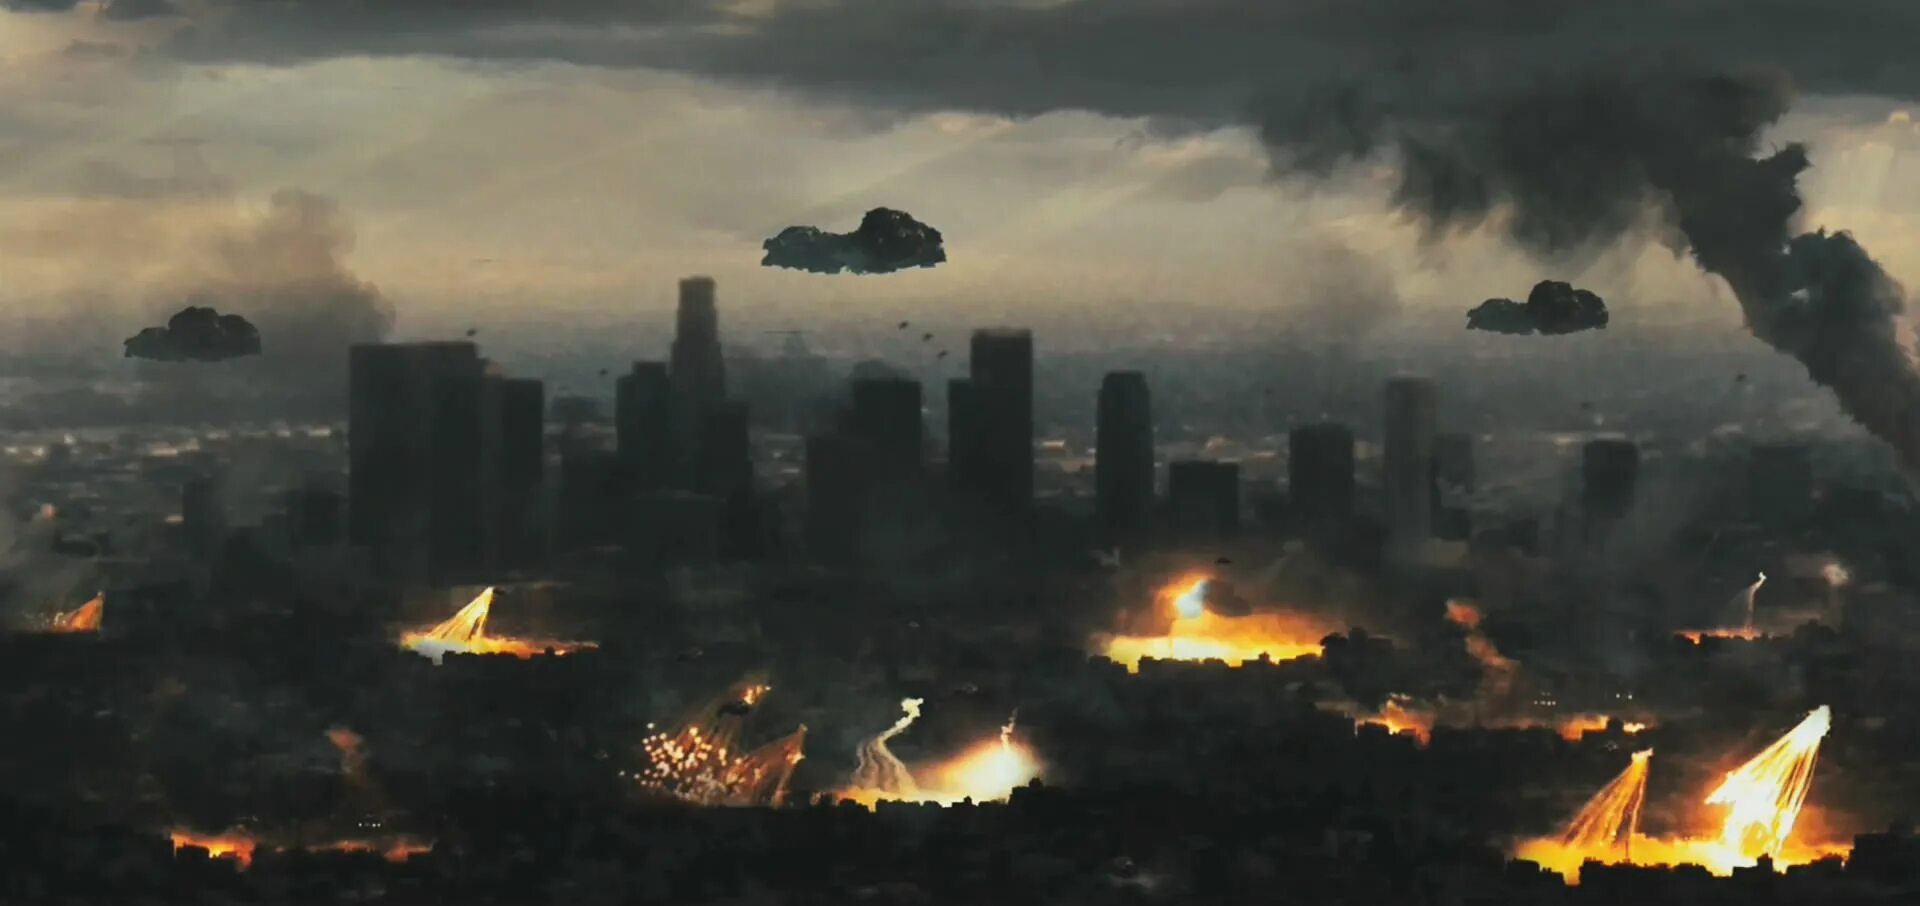 Нападение пришельцев. Инопланетное вторжение битва за Лос-Анджелес.